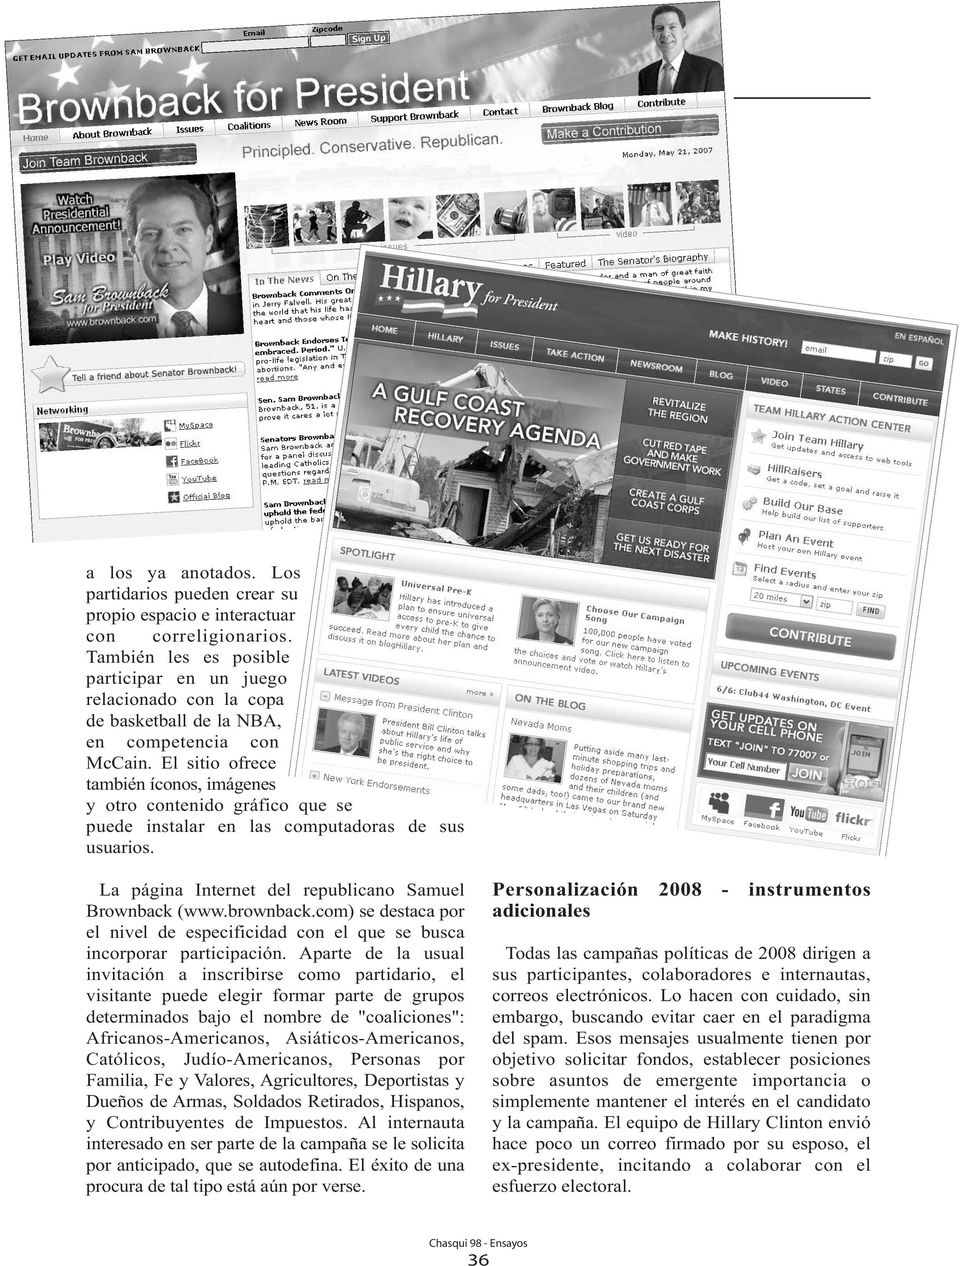 El sitio ofrece también íconos, imágenes y otro contenido gráfico que se puede instalar en las computadoras de sus usuarios. La página Internet del republicano Samuel Brownback (www.brownback.